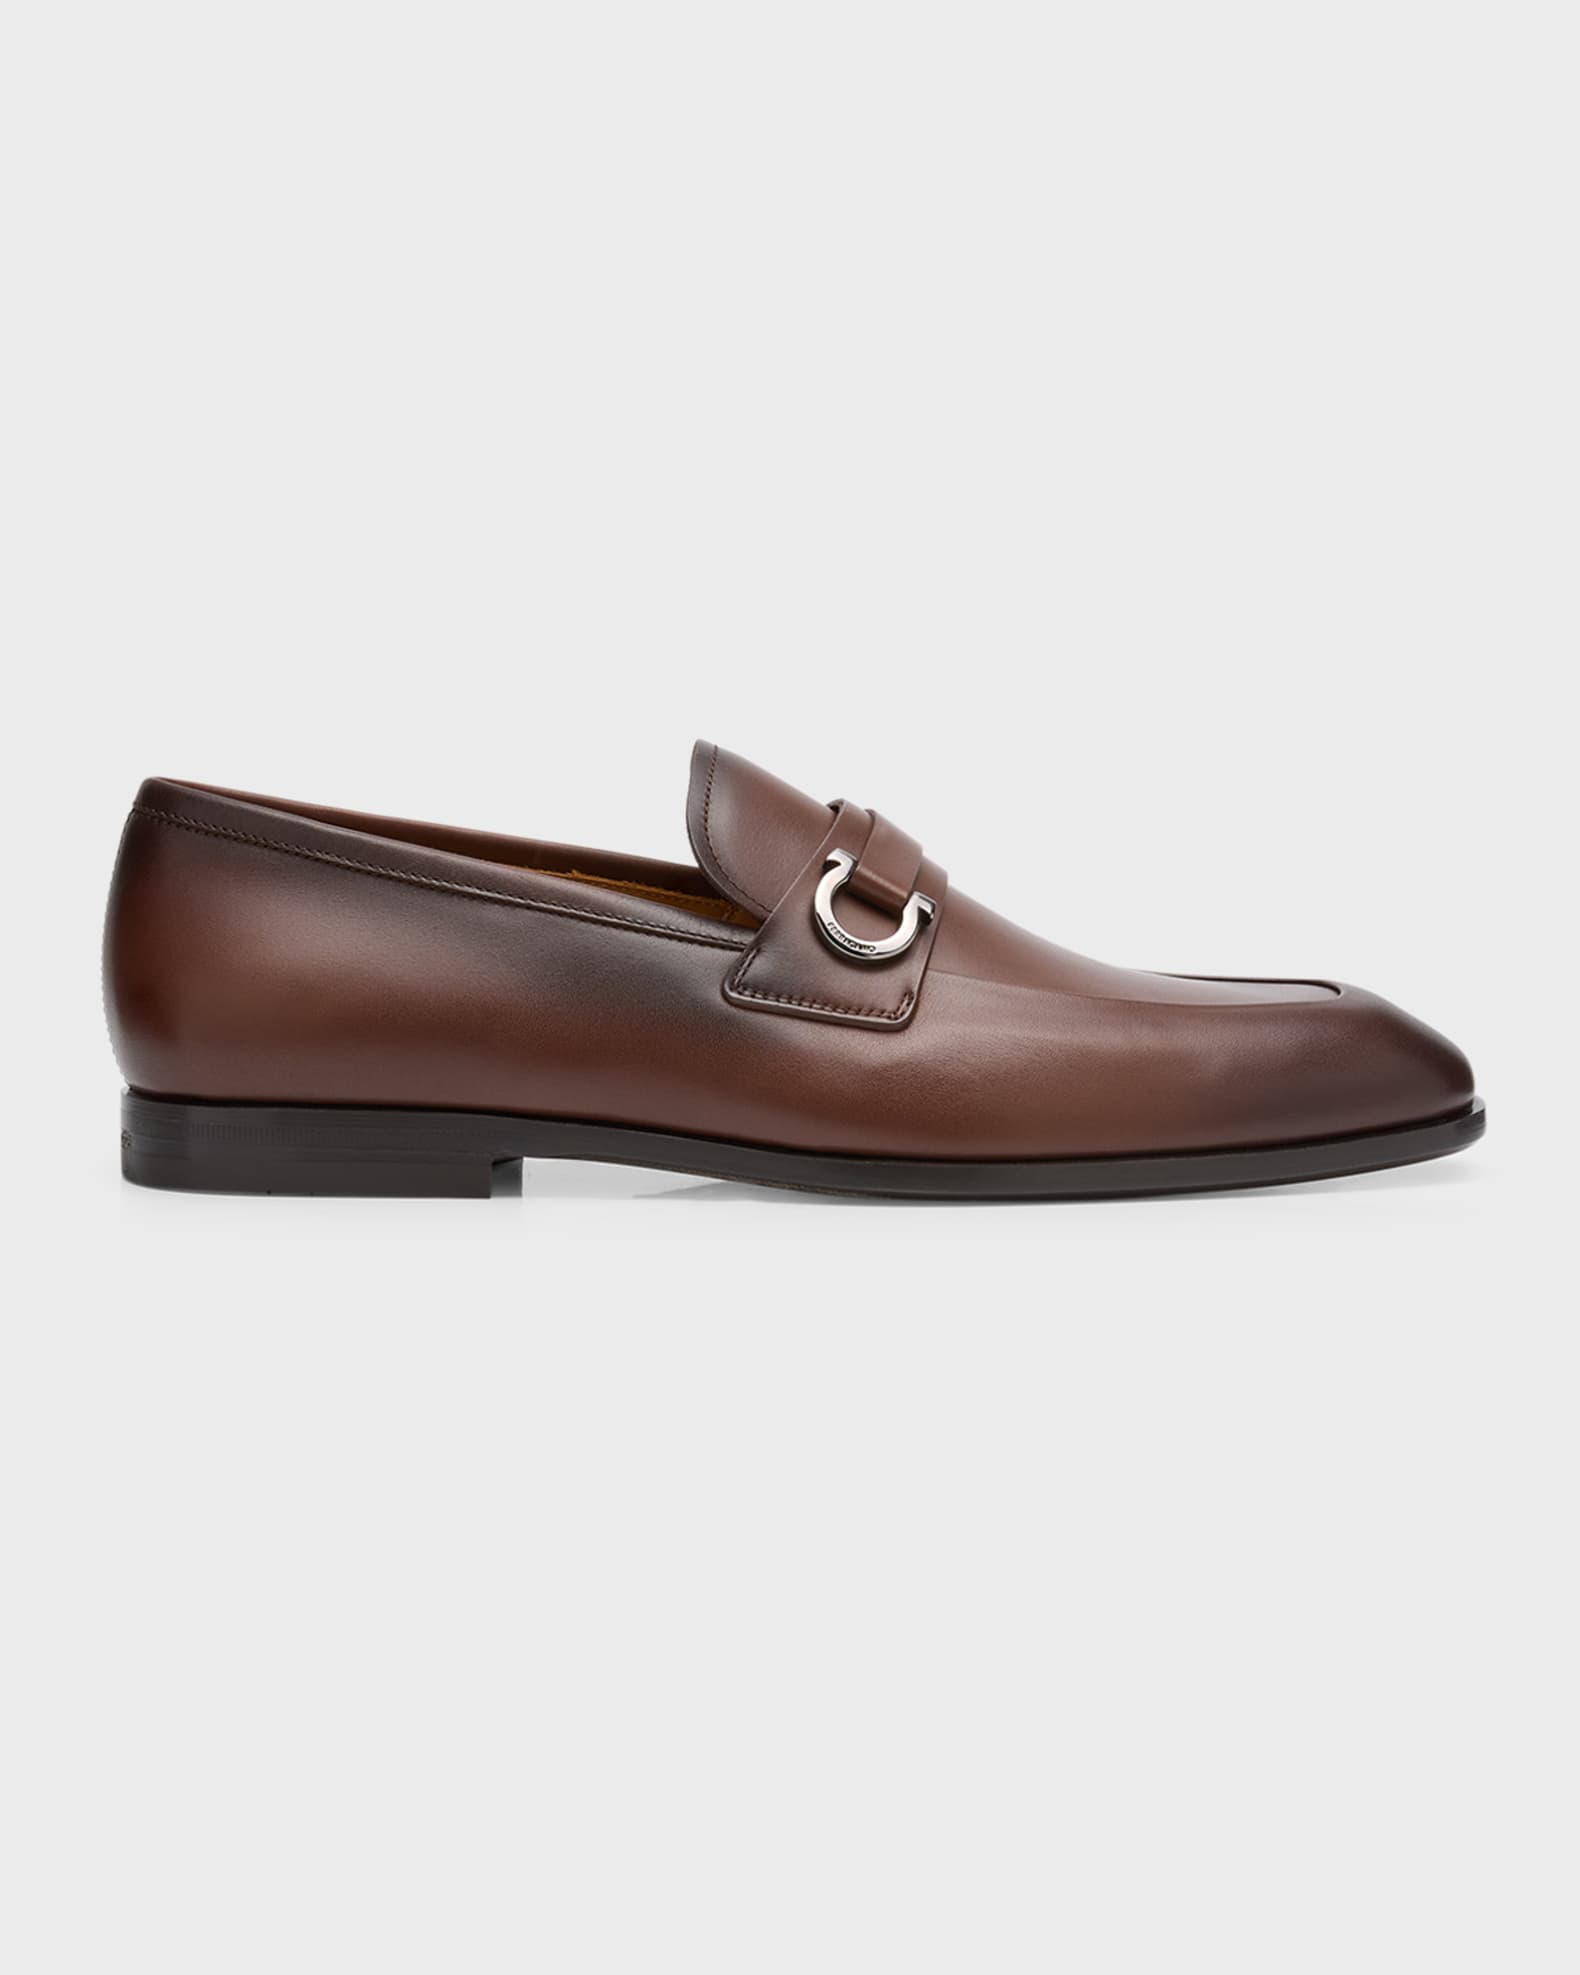 Ferragamo Men's Leather Loafers with Gancio Ornament | Neiman Marcus